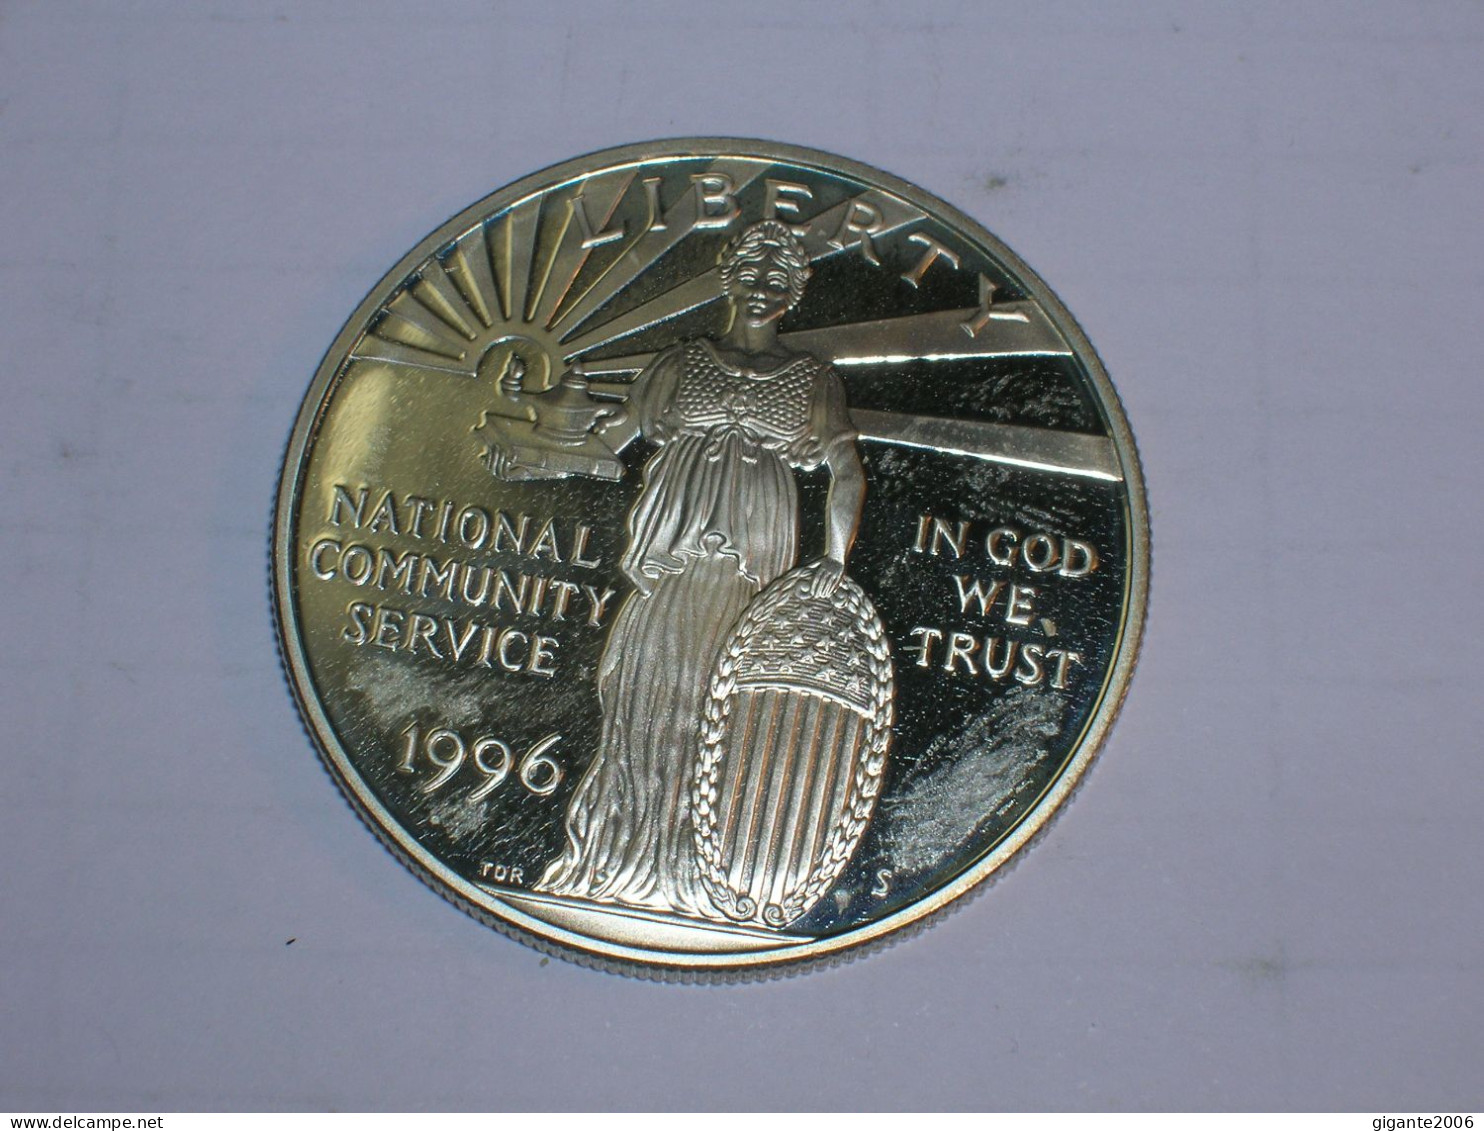 Estados Unidos/USA 1 Dolar Conmemorativo, 1996 S, Proof, National Community Service (13960) - Gedenkmünzen